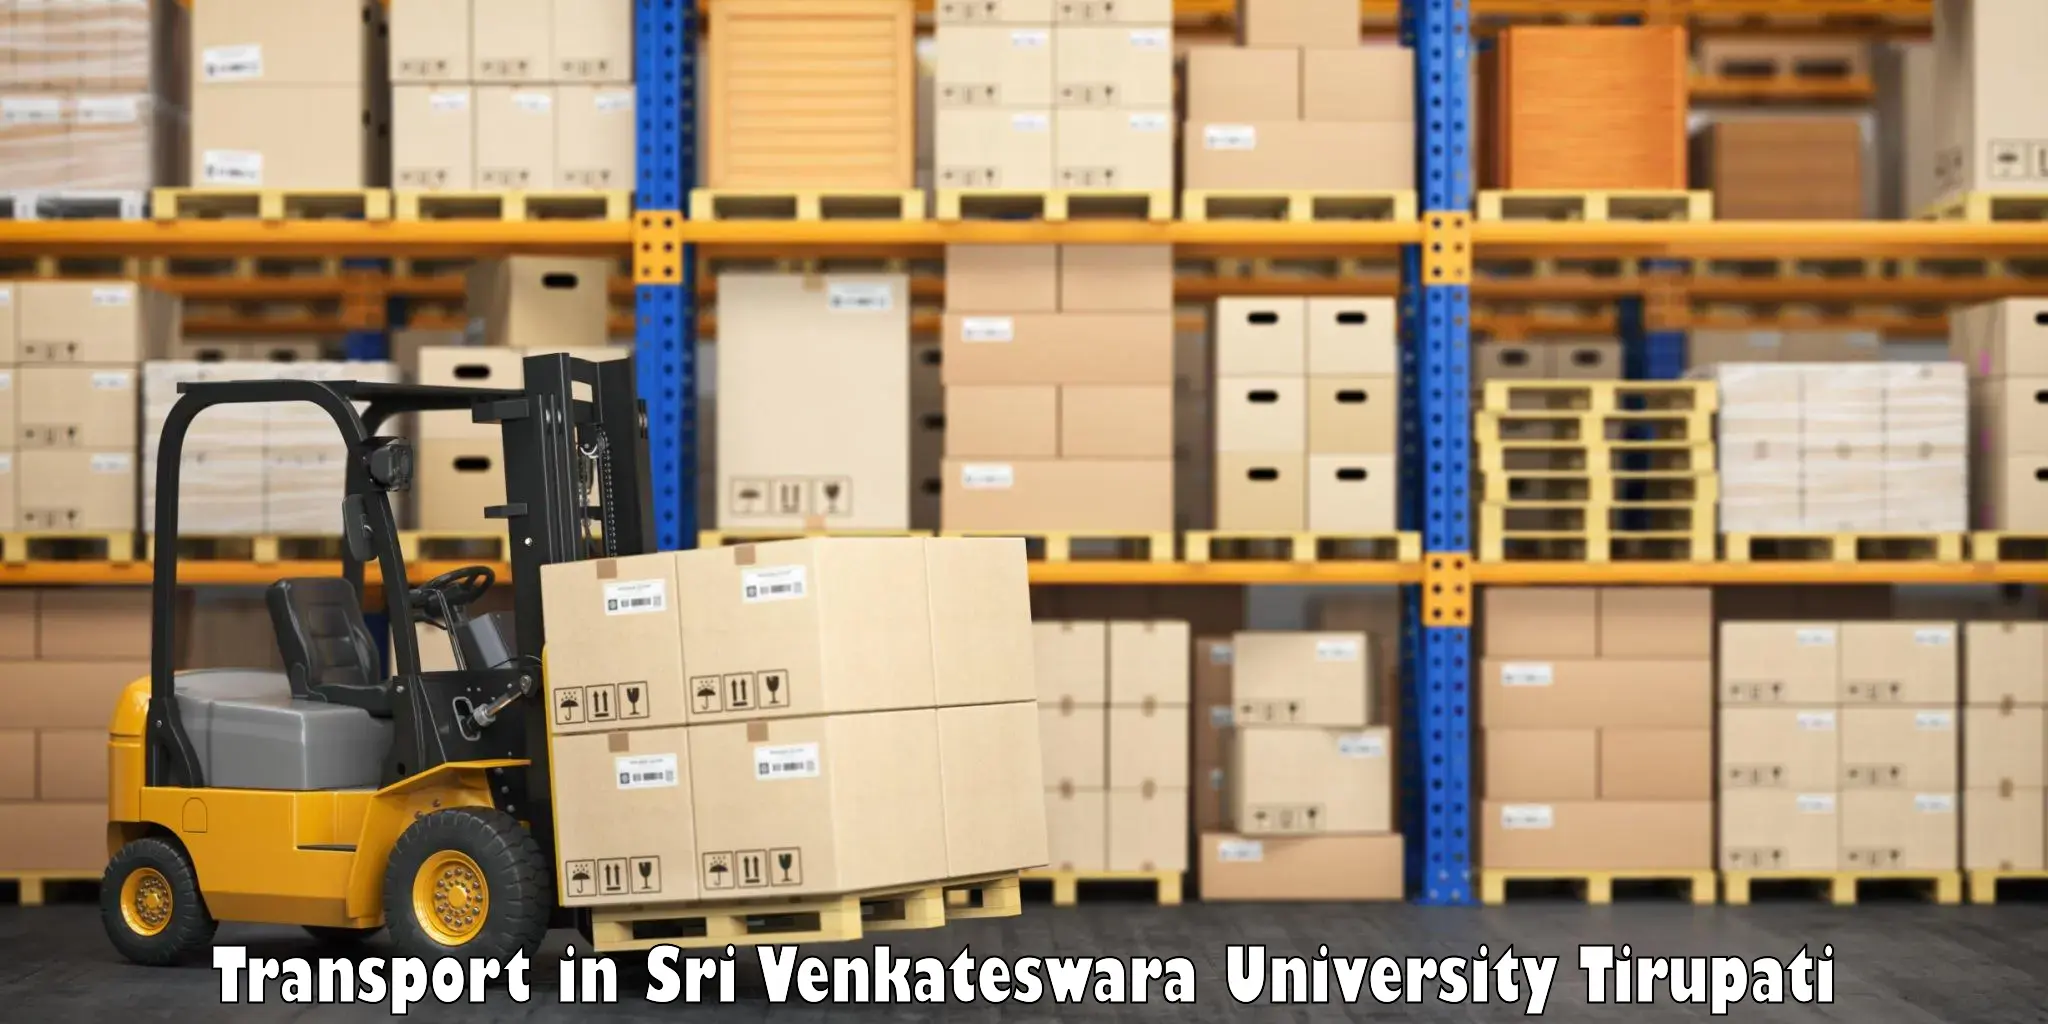 Intercity transport in Sri Venkateswara University Tirupati